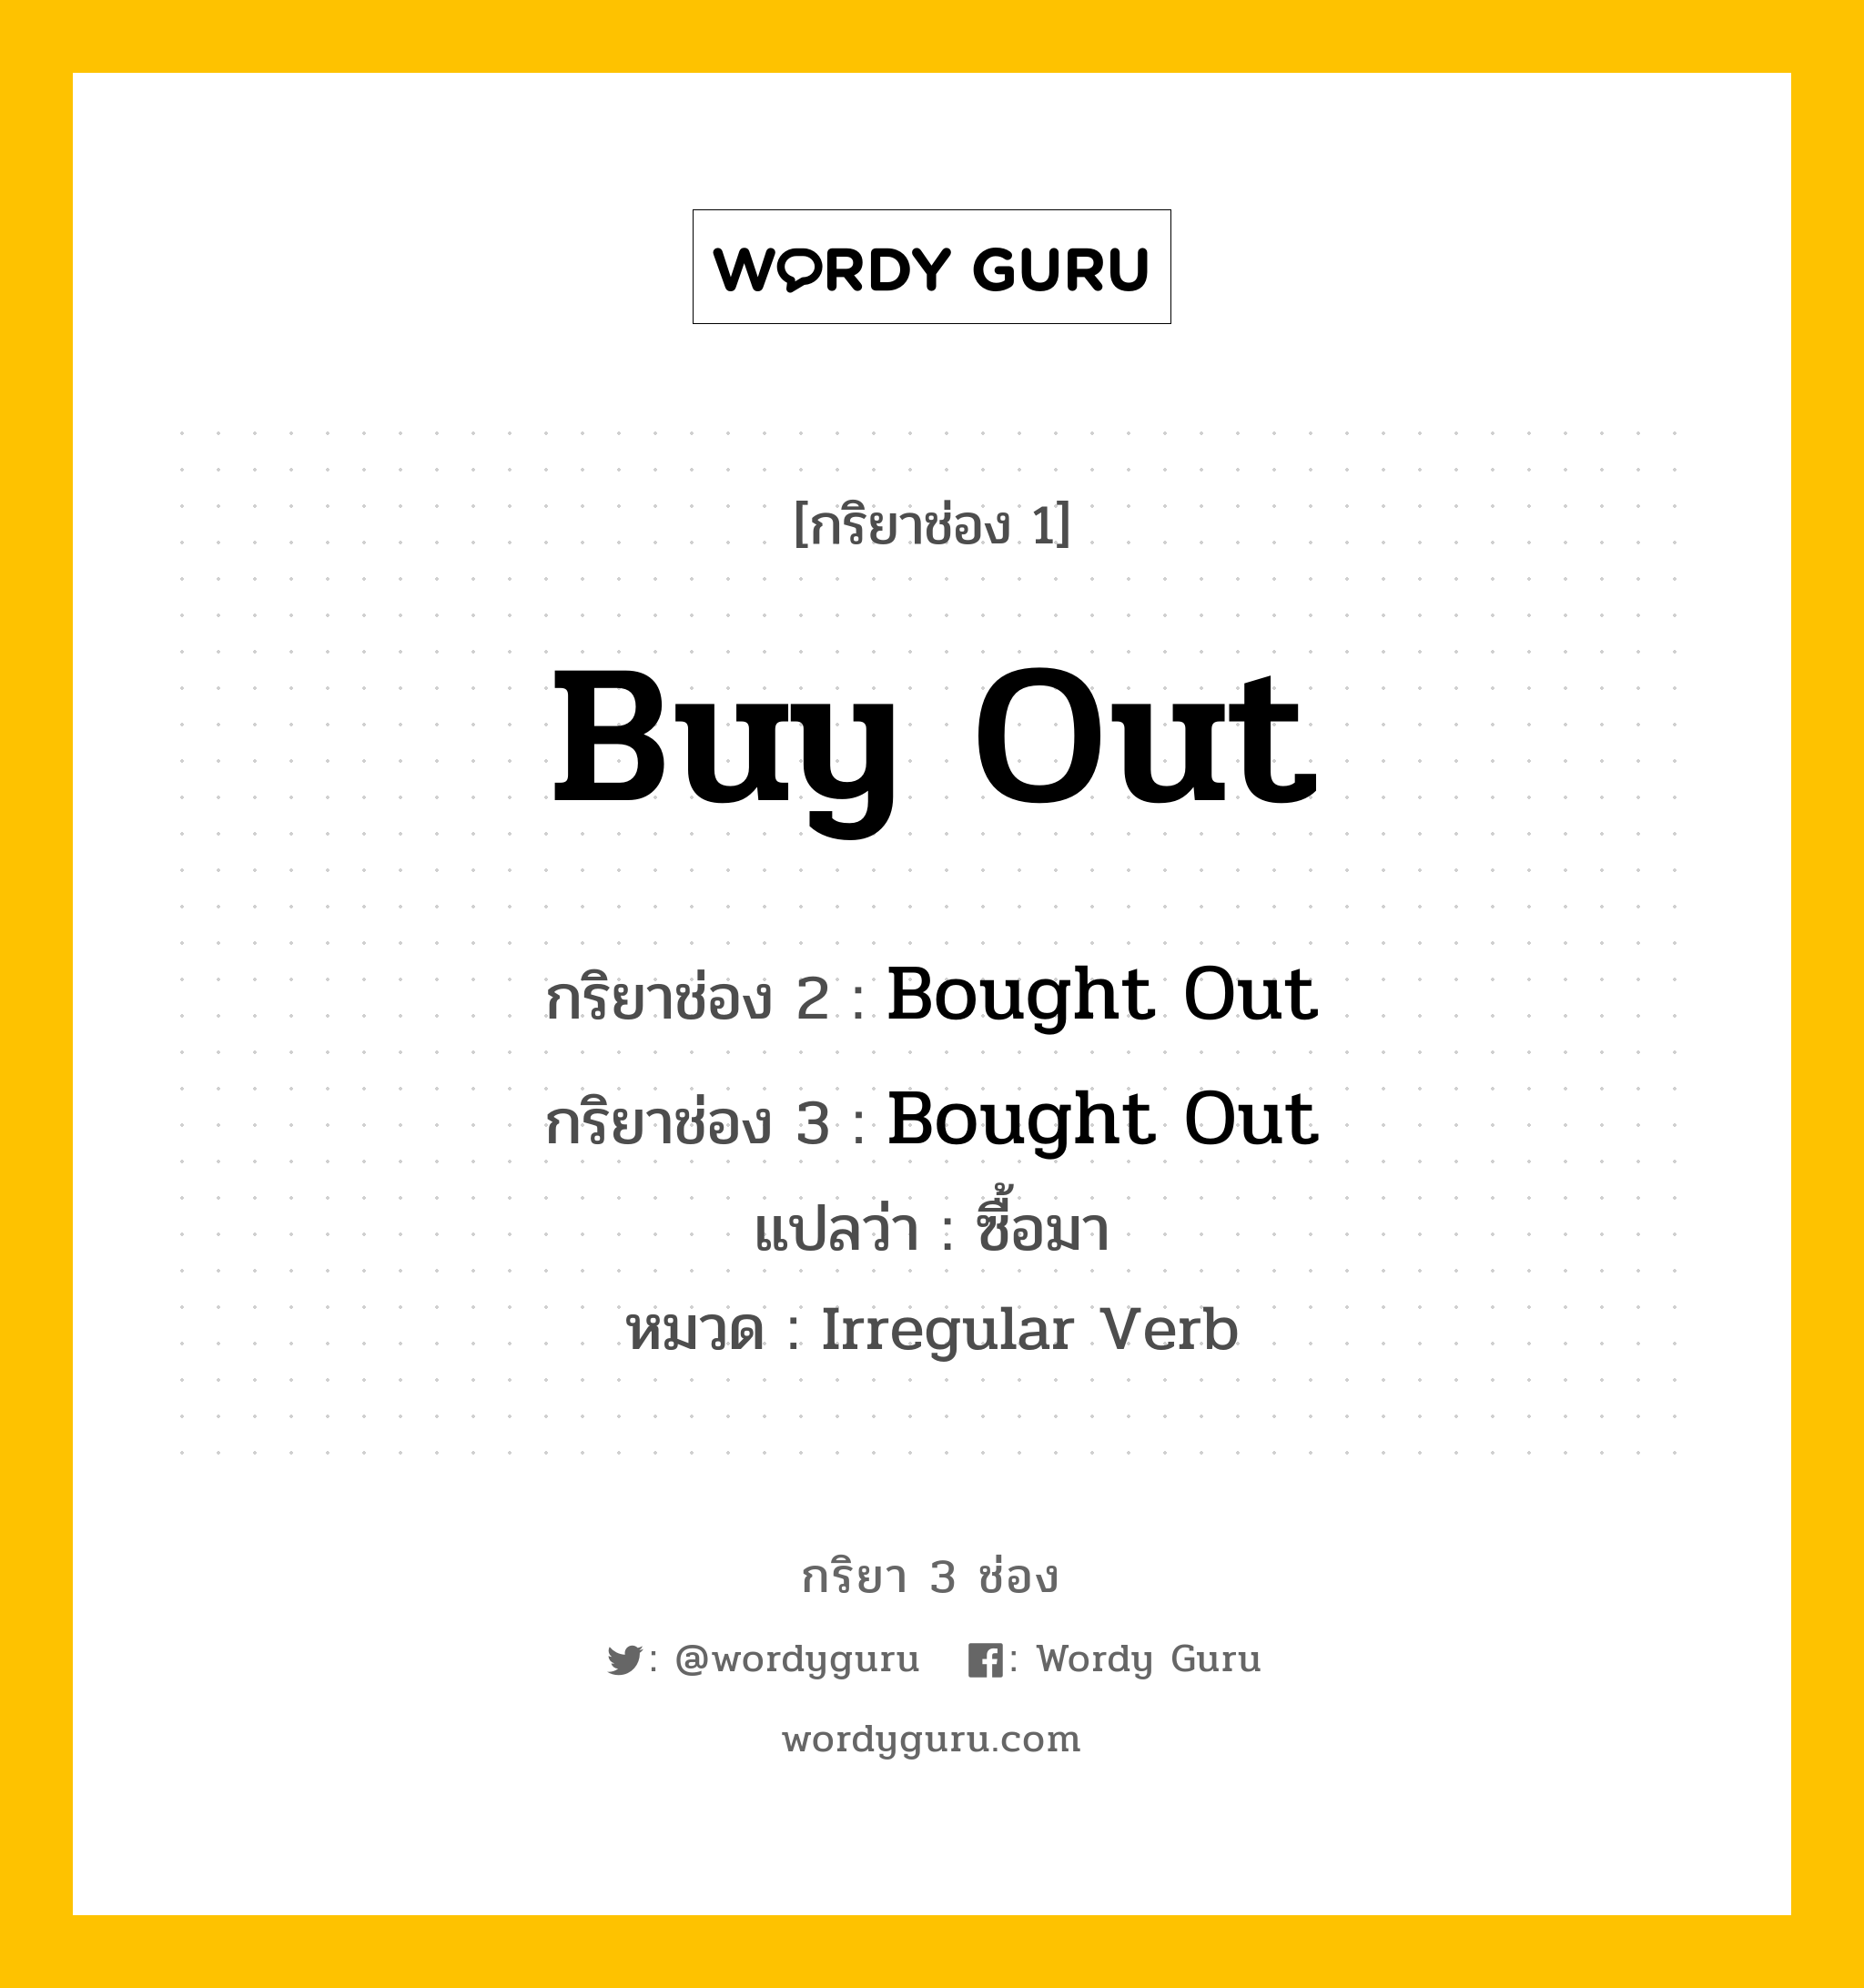 กริยา 3 ช่อง: Buy Out ช่อง 2 Buy Out ช่อง 3 คืออะไร, กริยาช่อง 1 Buy Out กริยาช่อง 2 Bought Out กริยาช่อง 3 Bought Out แปลว่า ซื้อมา หมวด Irregular Verb หมวด Irregular Verb